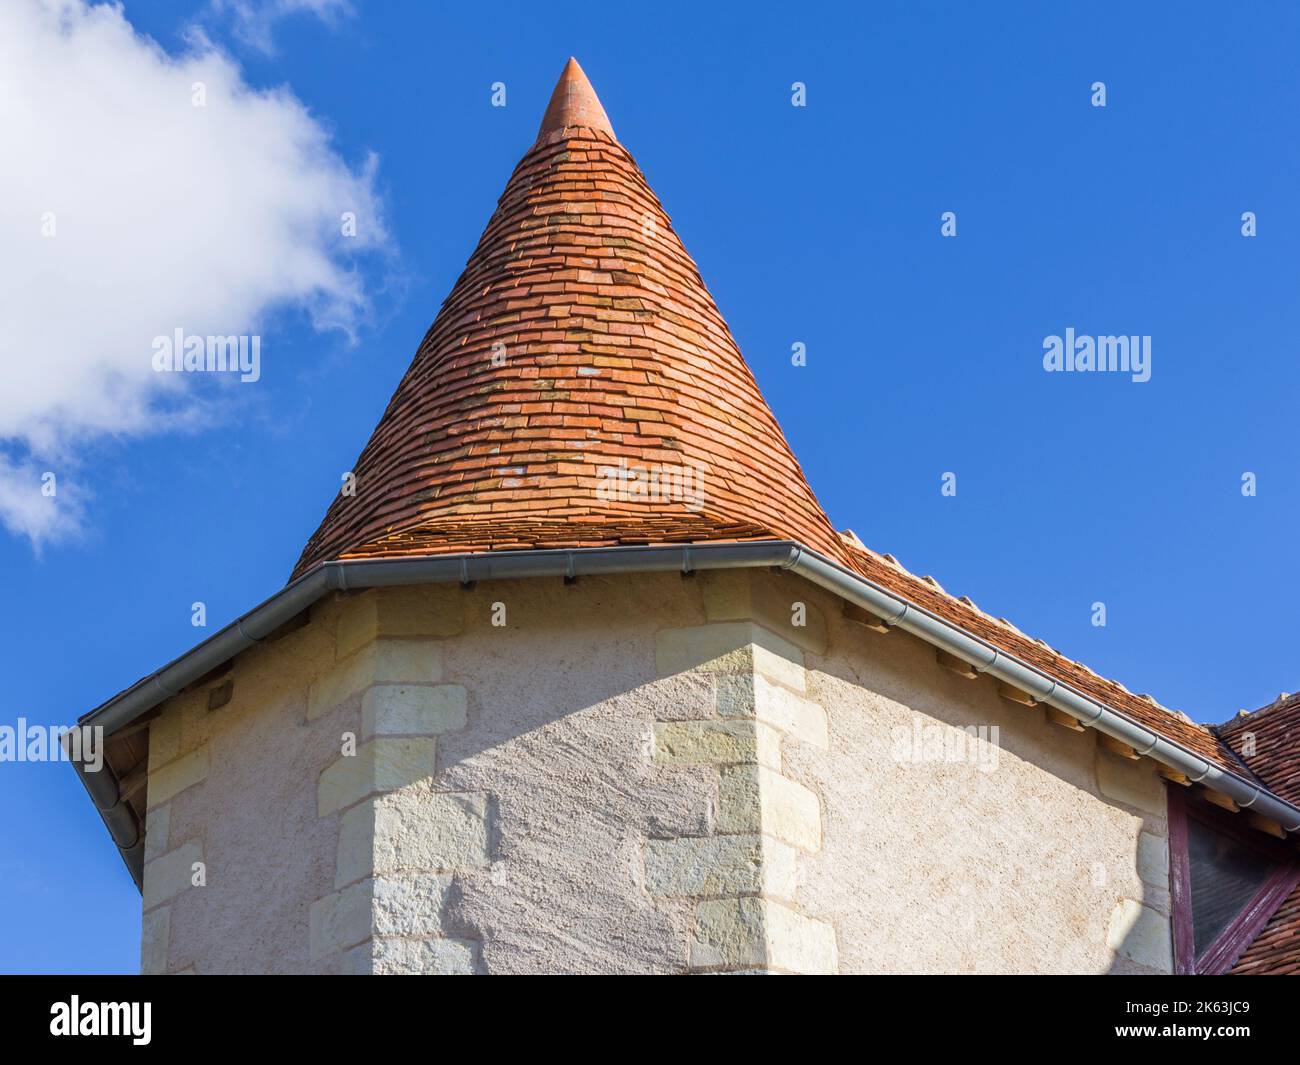 Toit conique en tuiles récemment rénové sur petite tour octogonale / hexagonale - le petit-Pressigny, Indre-et-Loire (37), France. Banque D'Images